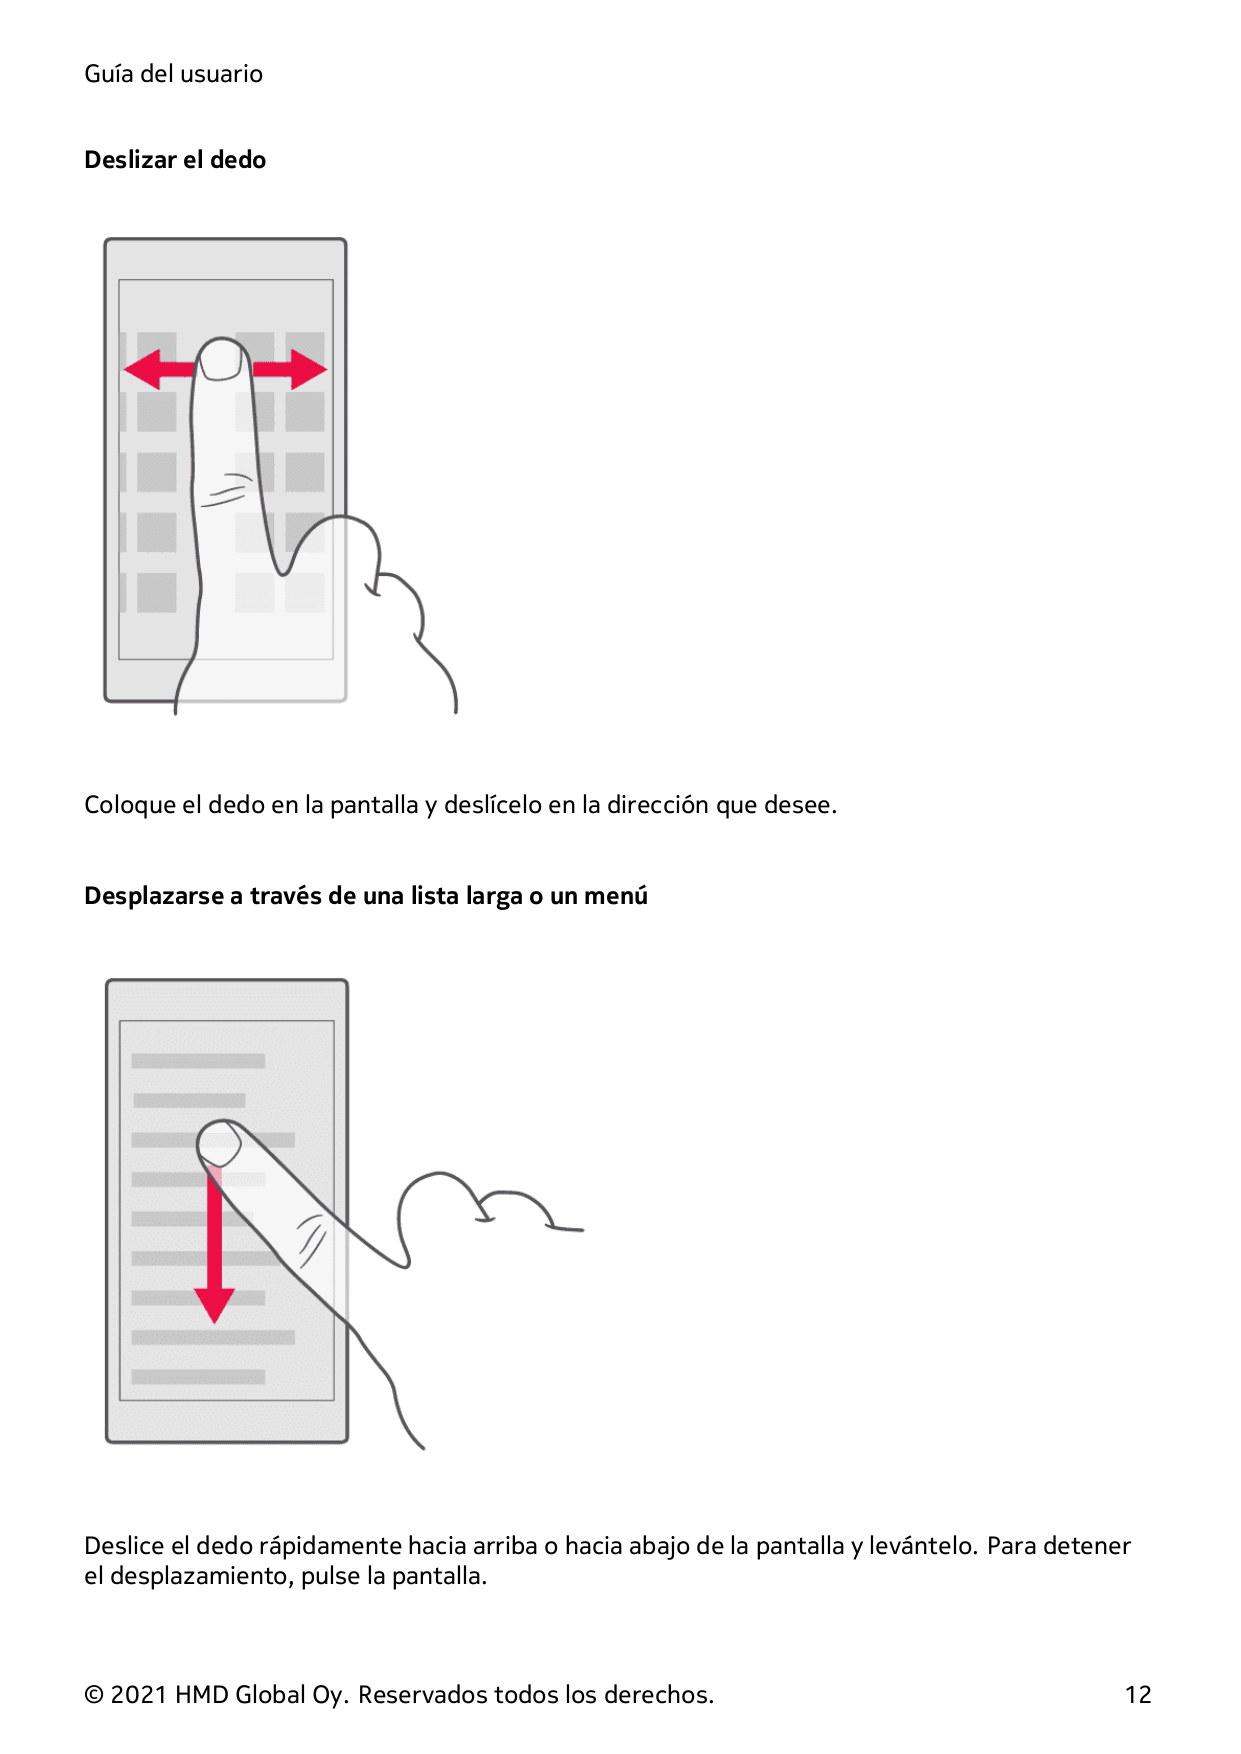 Guía del usuarioDeslizar el dedoColoque el dedo en la pantalla y deslícelo en la dirección que desee.Desplazarse a través de una